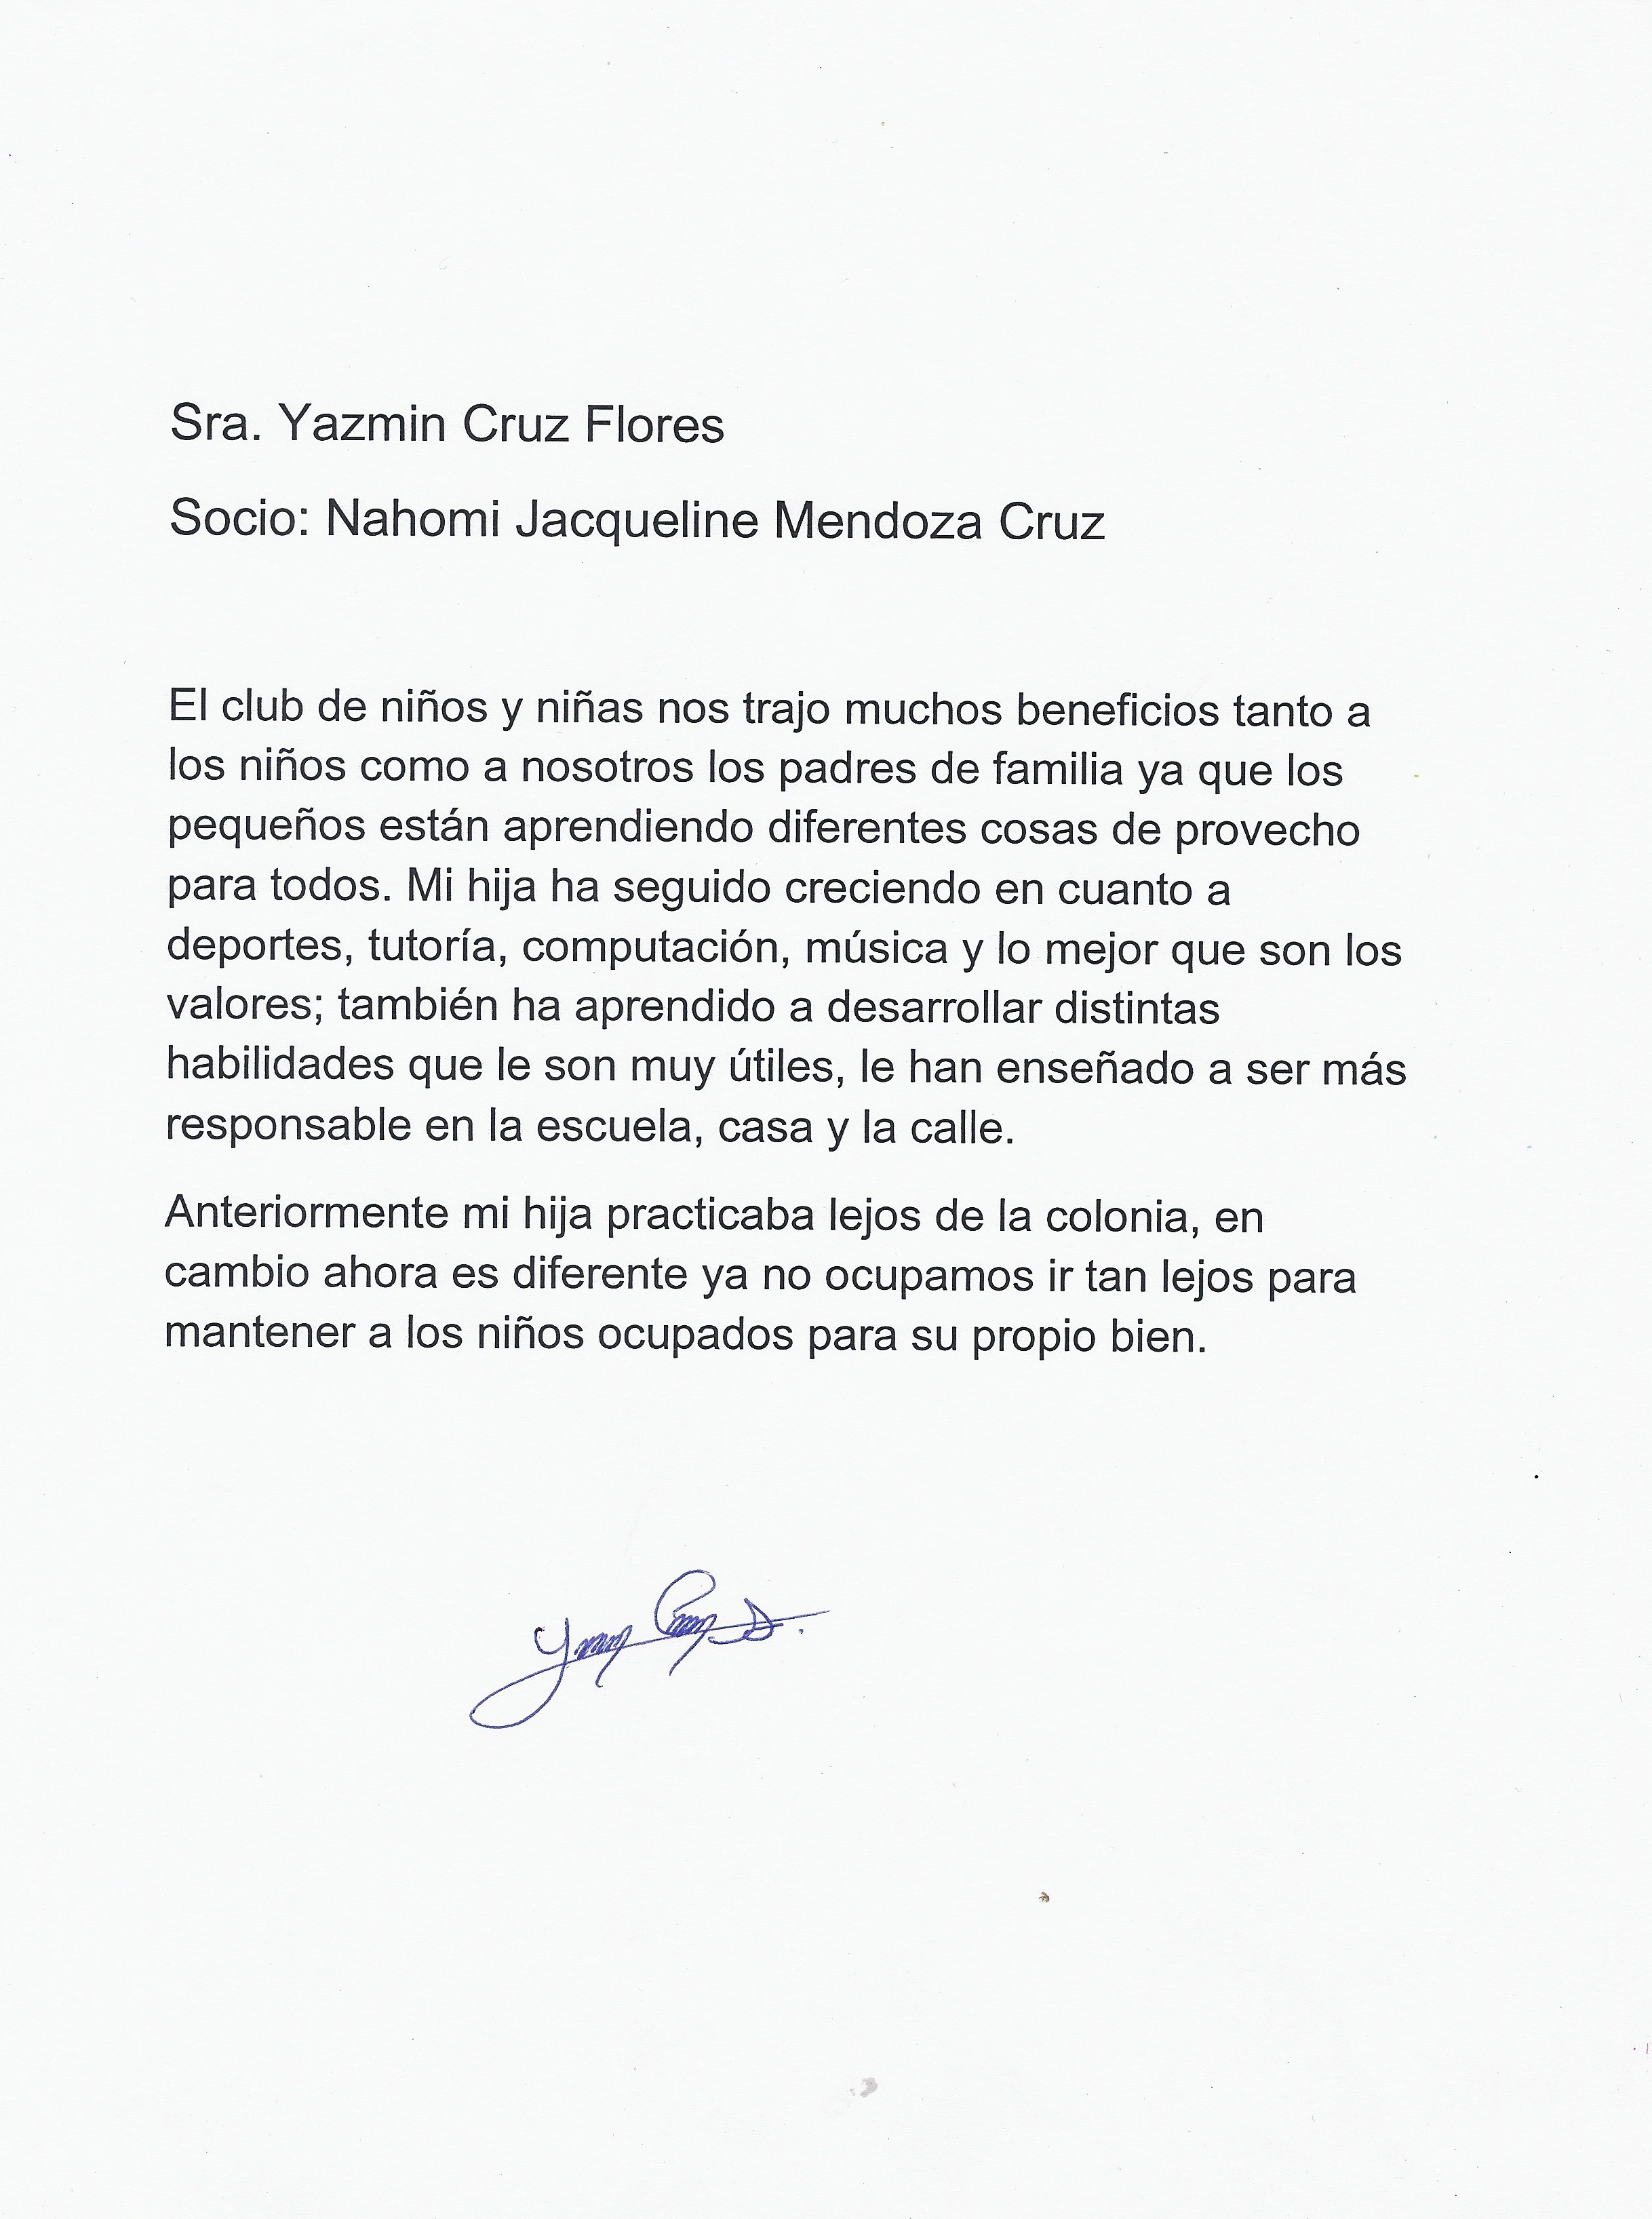 Carta de Yazmin